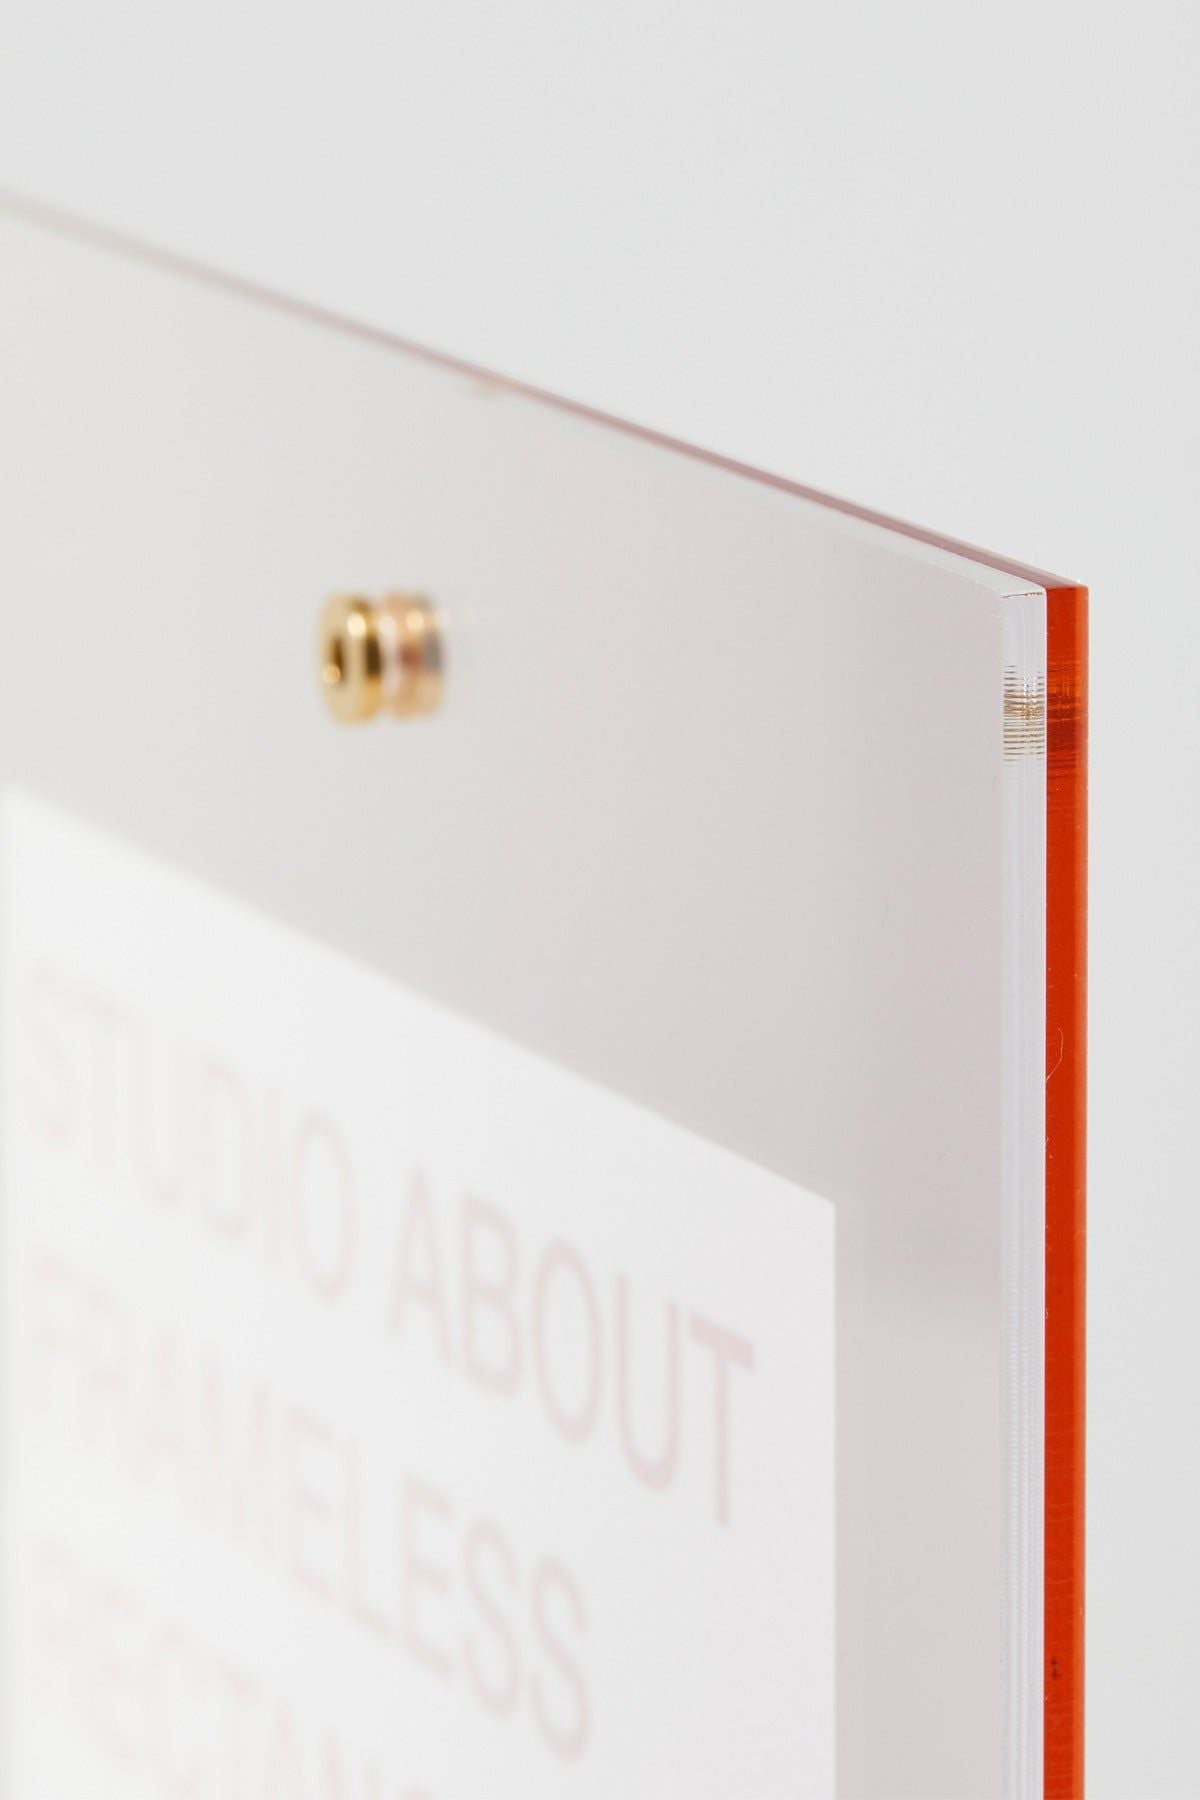 Studio over frameless frame A3 -rechthoek, roos